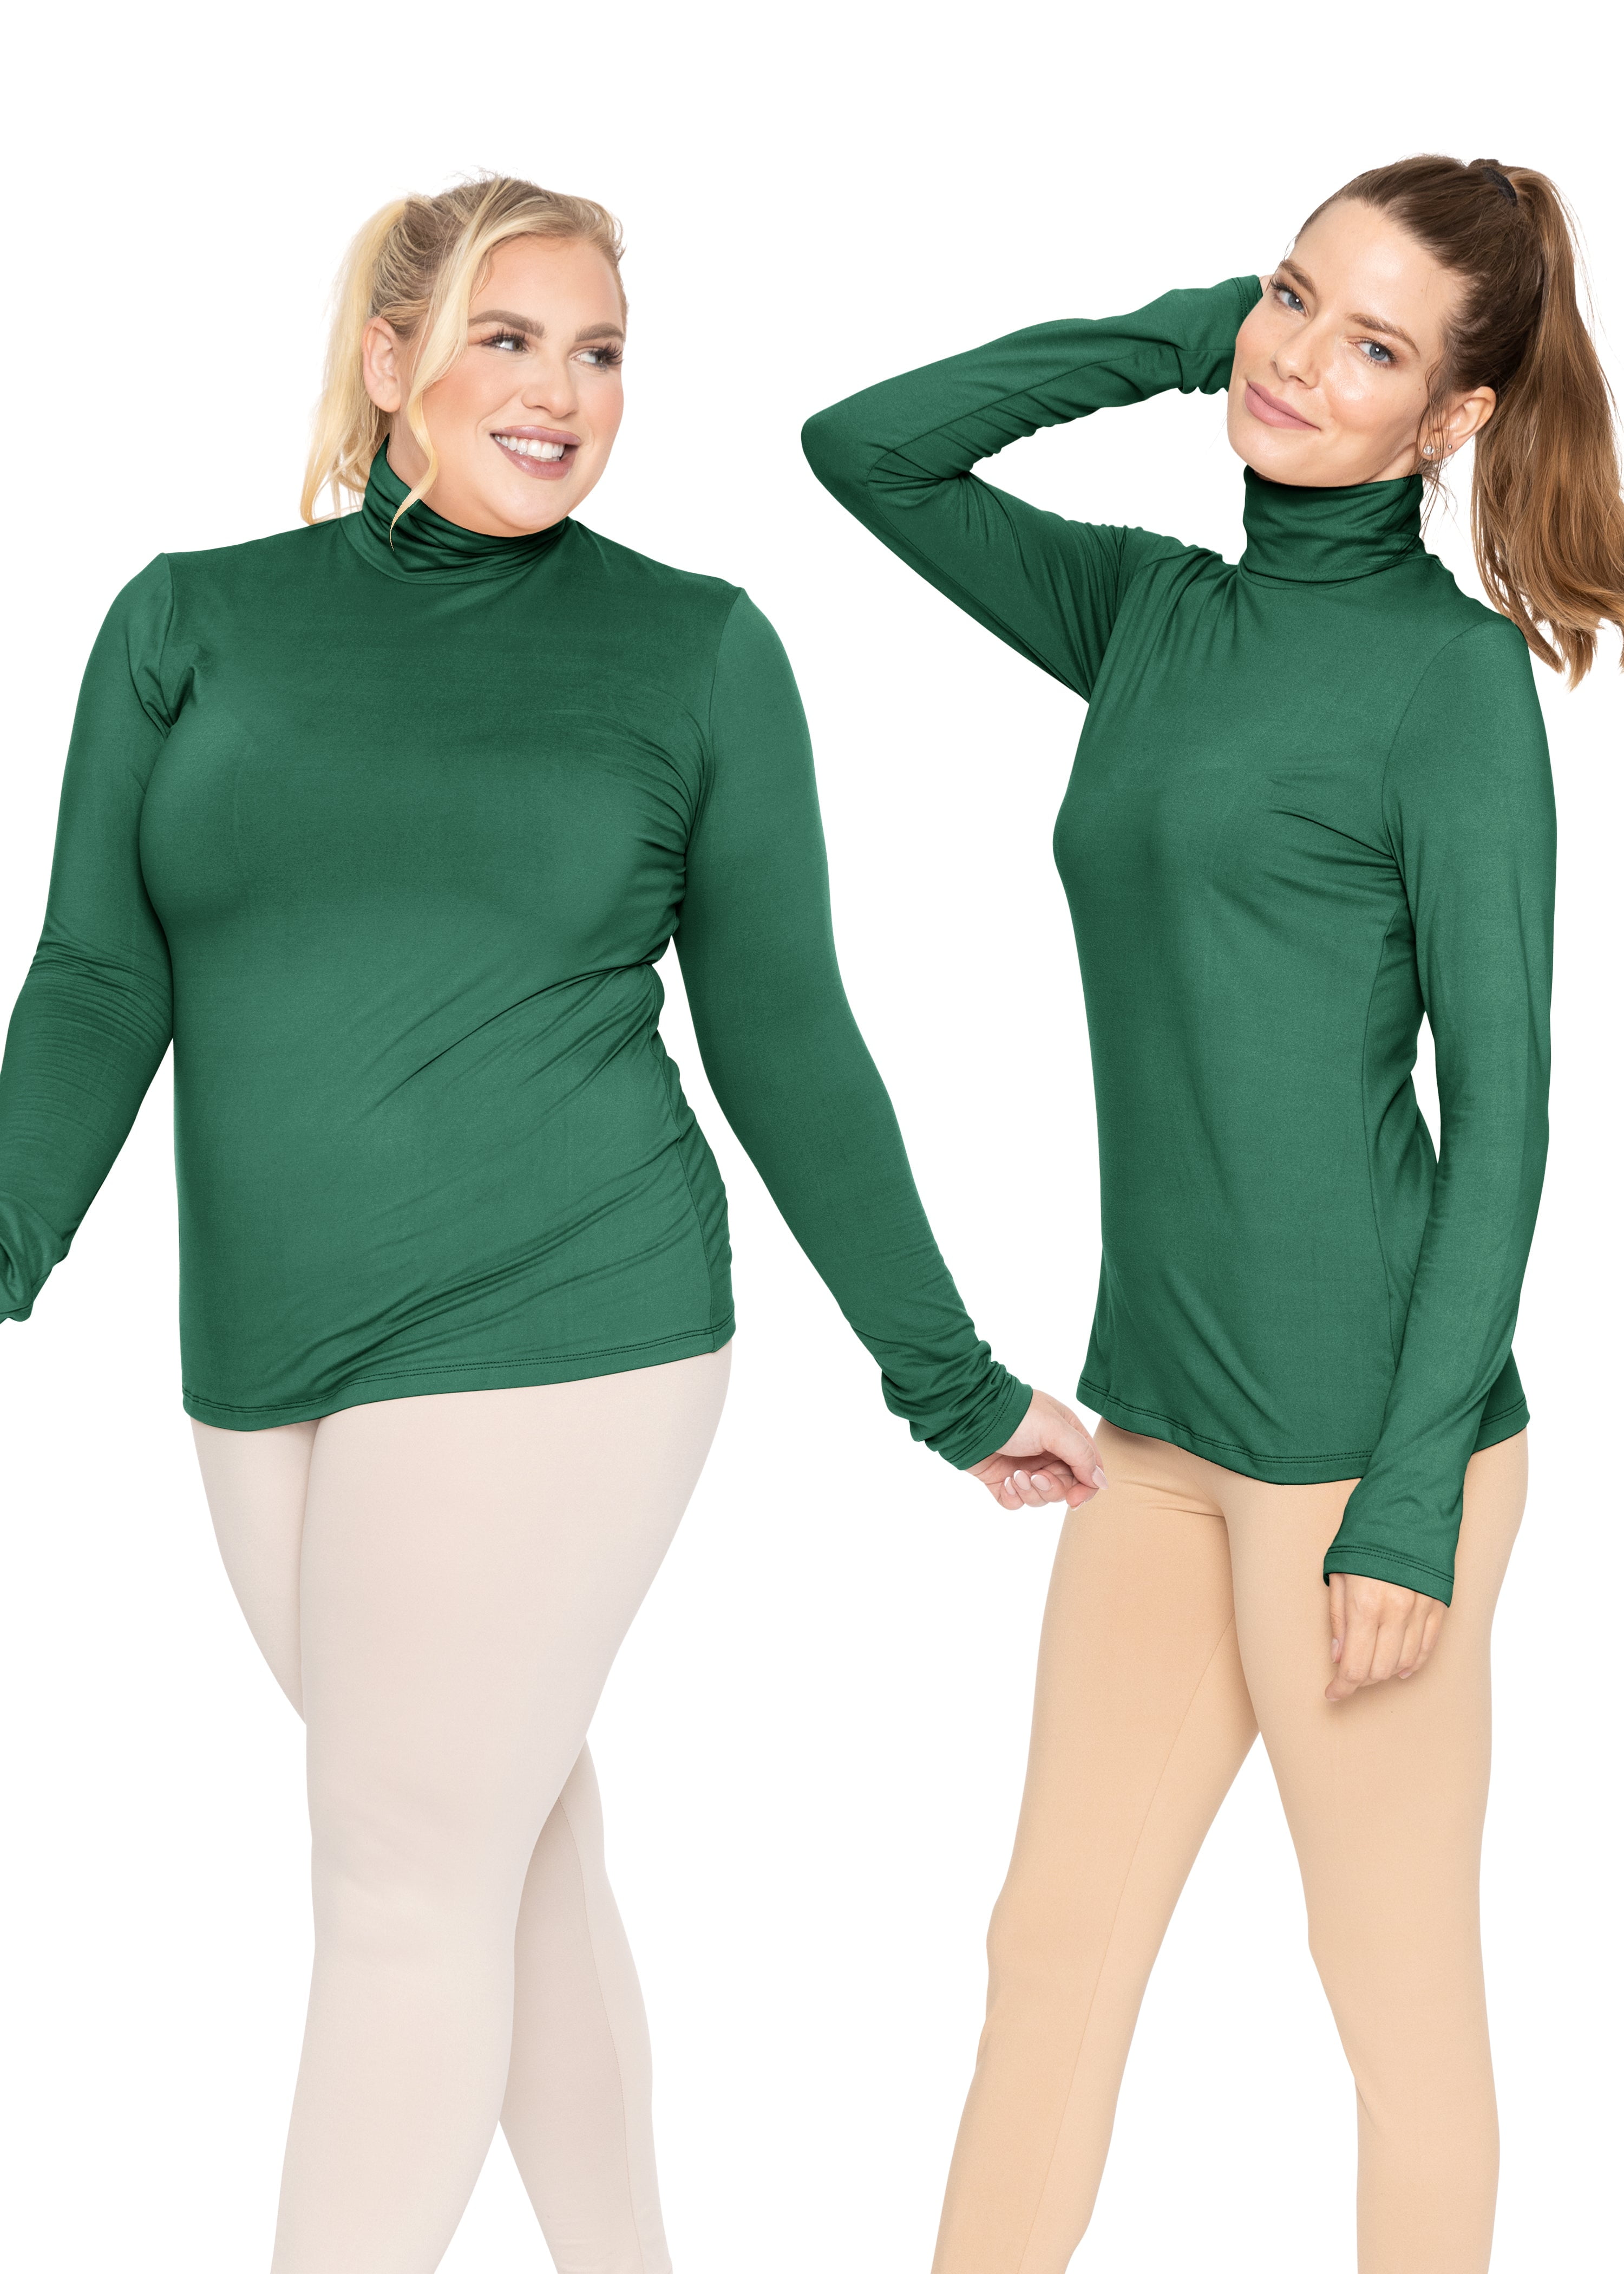 Womens Plus Size Warm Long Sleeve Turtleneck Top, Kuwait